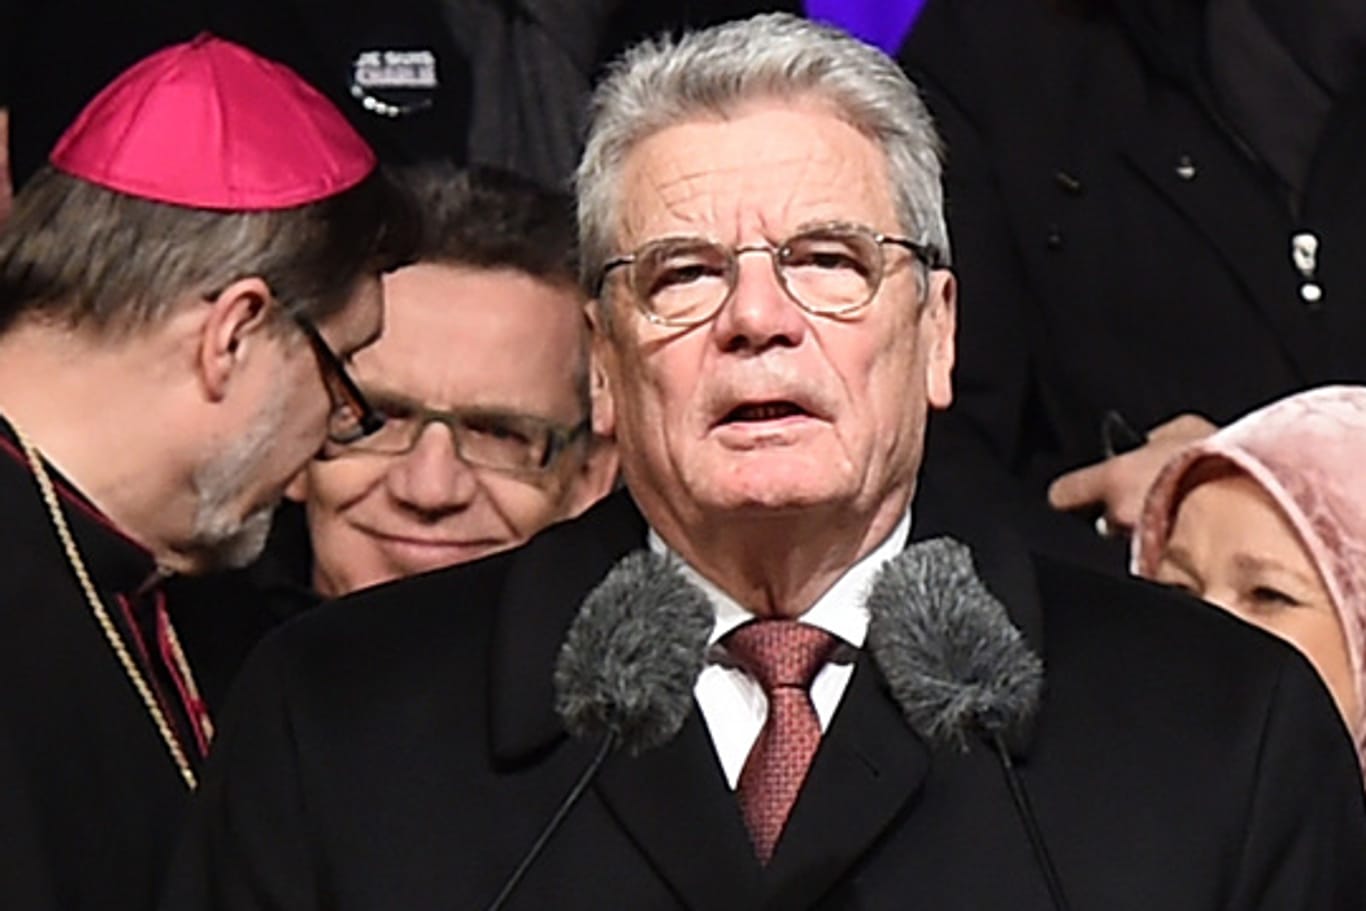 Bundespräsident Gauck wählt bei der Mahnwache gegen islamistischen Terror klare Worte.